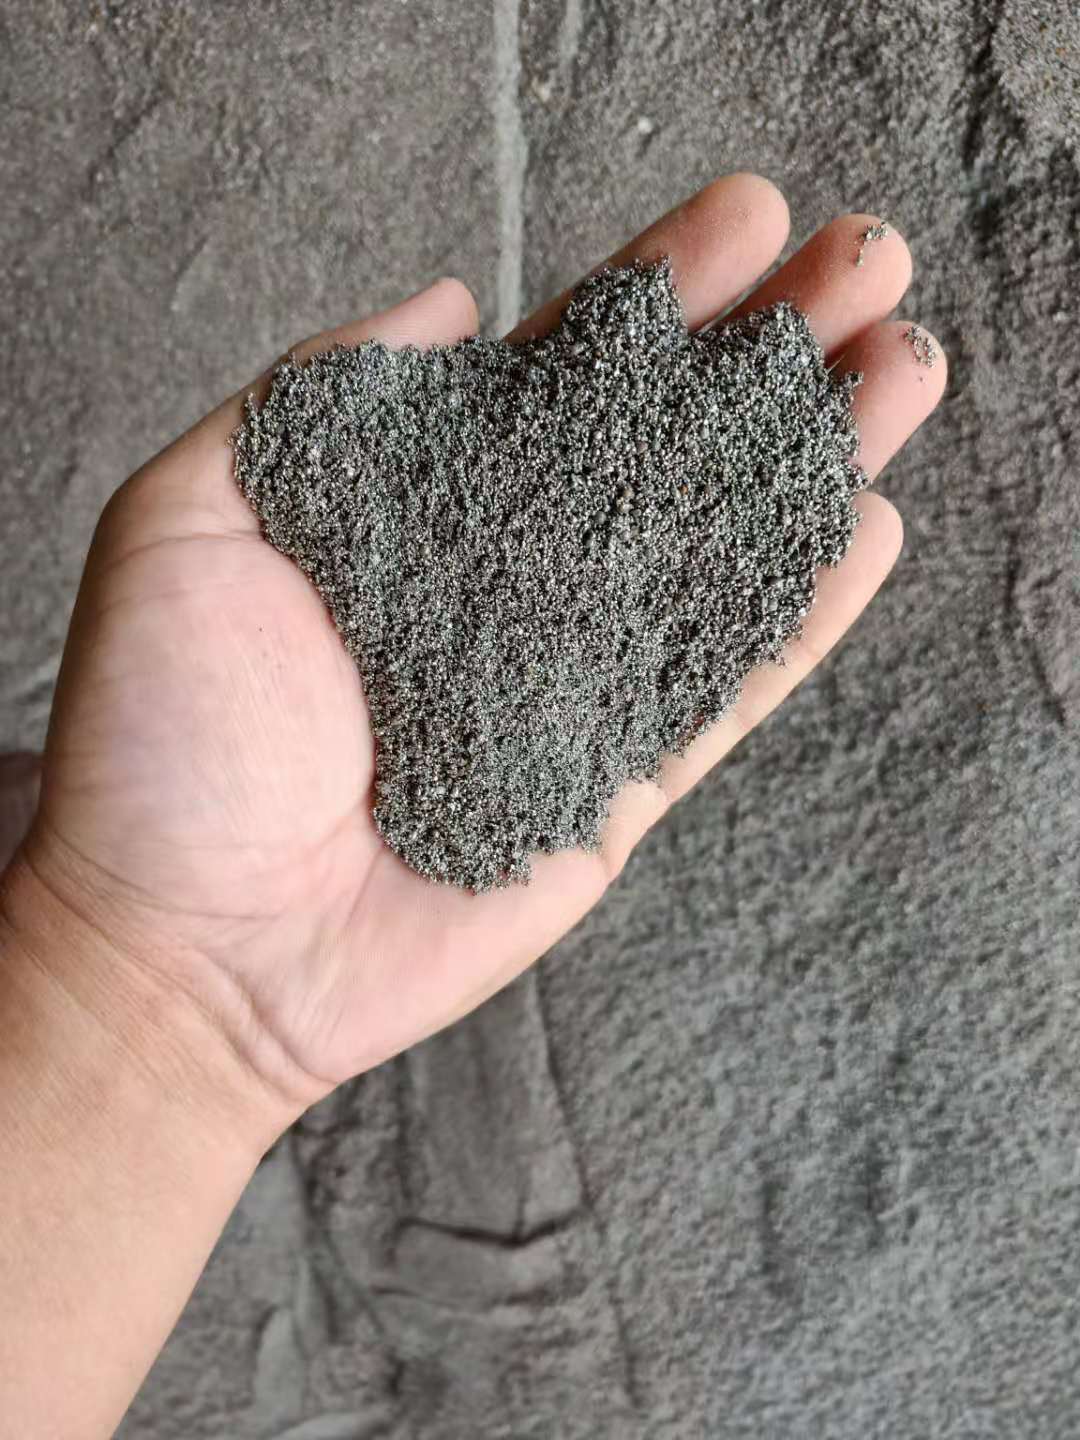 晟博安配重砂堆积密度大具有较强的耐磨损性能按比重要求供应